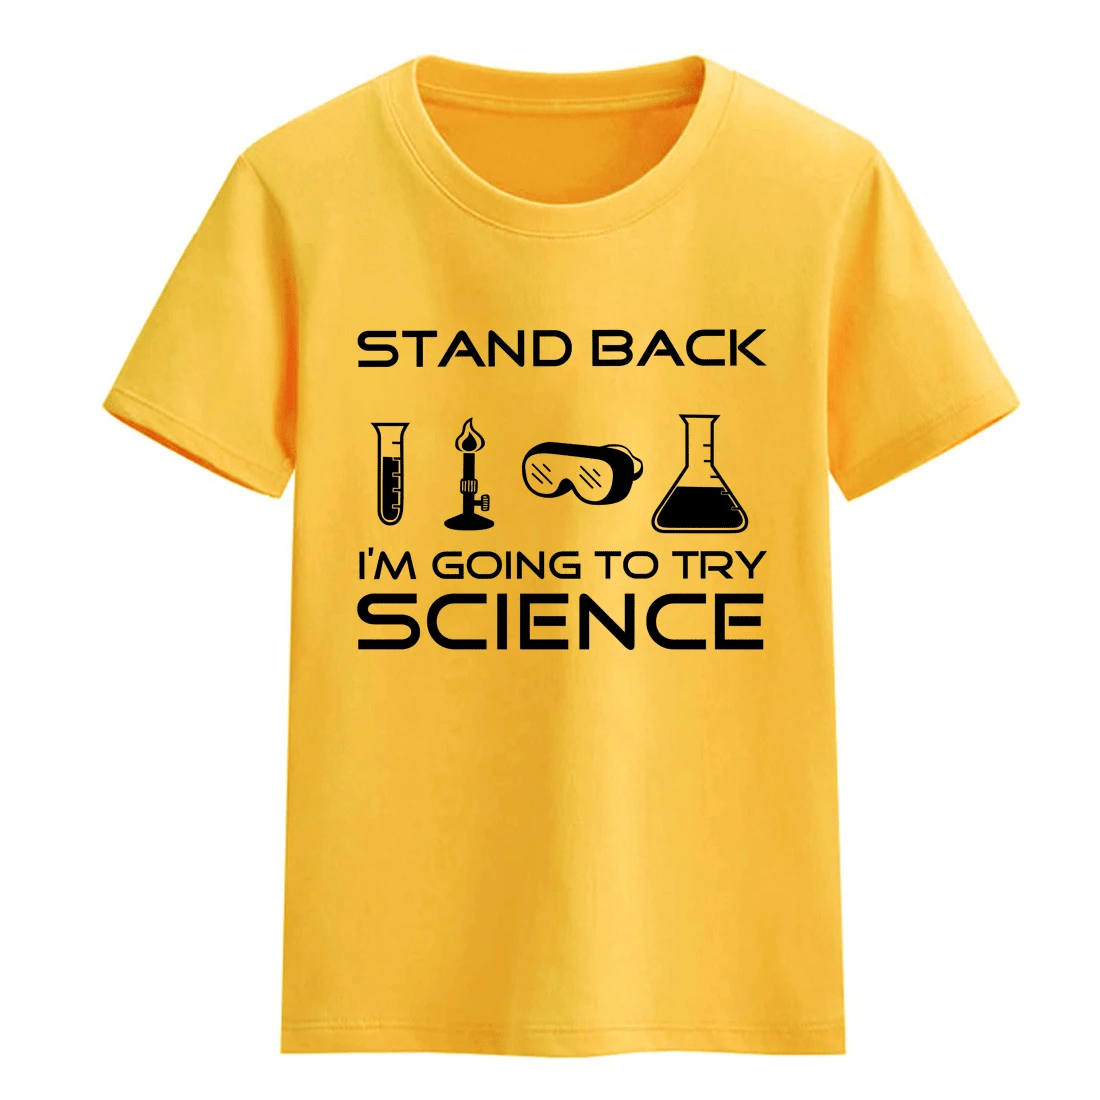 Отойти я собираюсь попробовать наука 2018 Детские футболки для с коротким рукавом для мальчиков хлопковая Футболка с круглым вырезом для